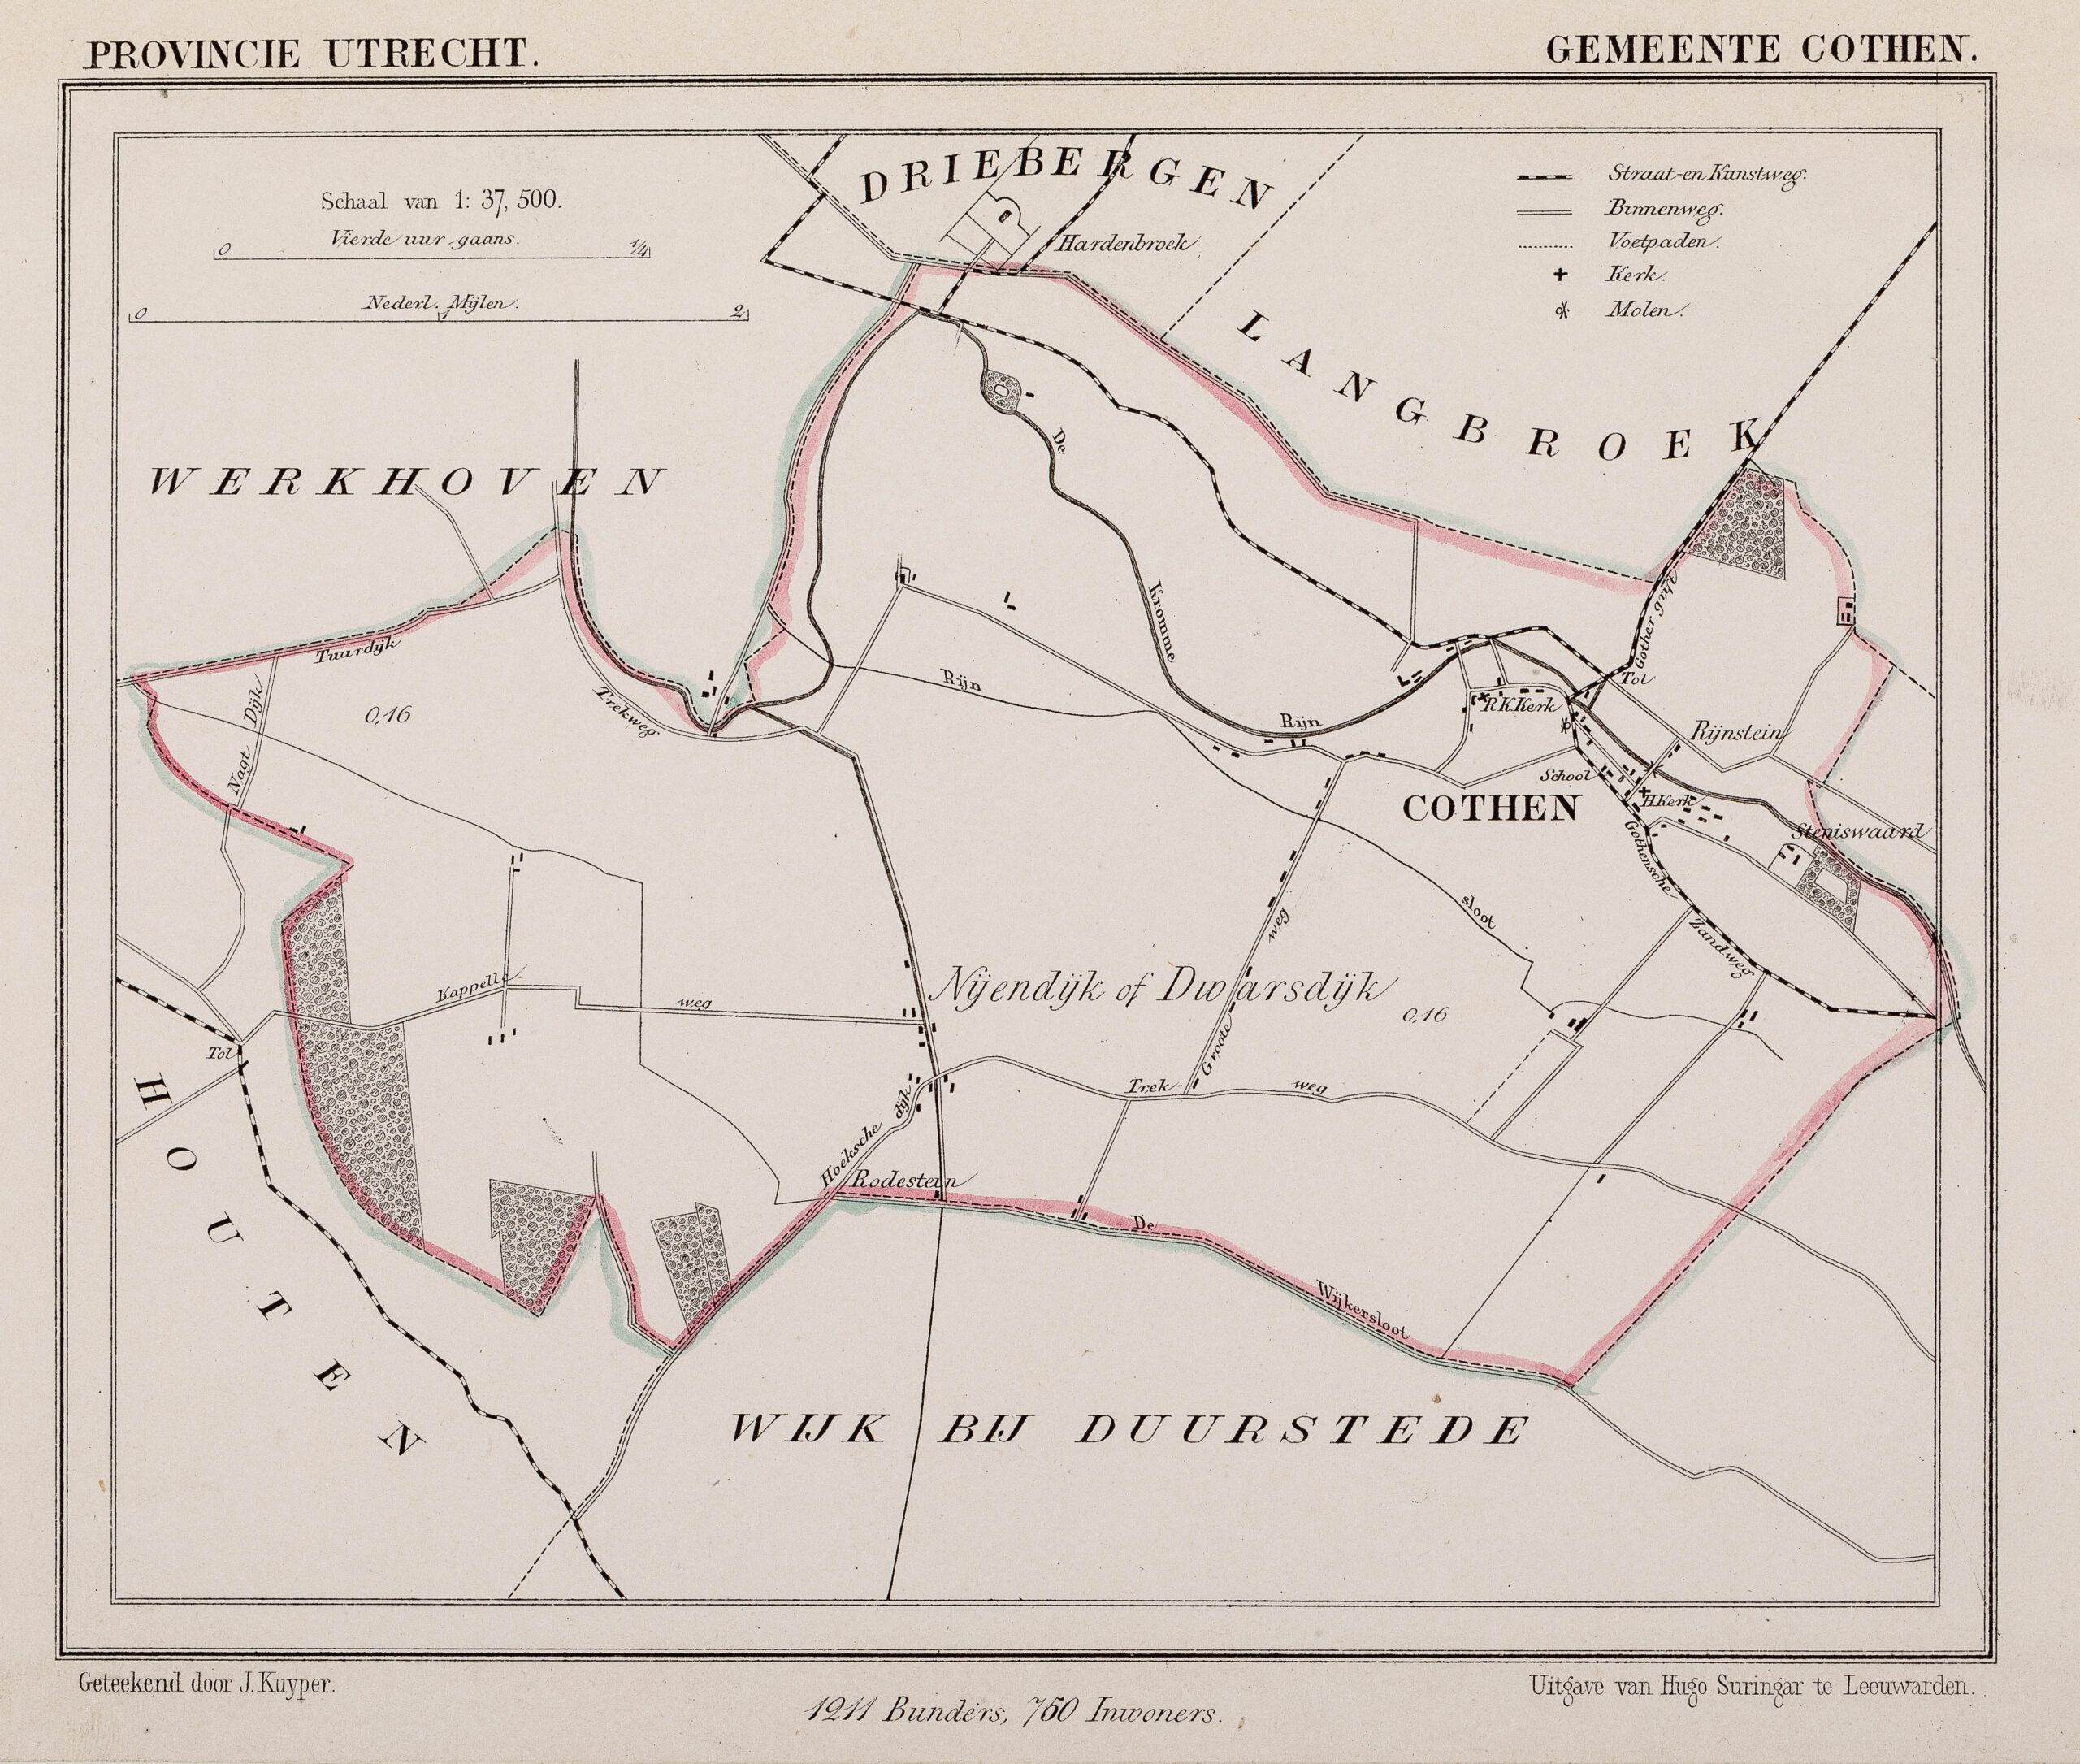 Plattegrond van de gemeente Cothen, 1871